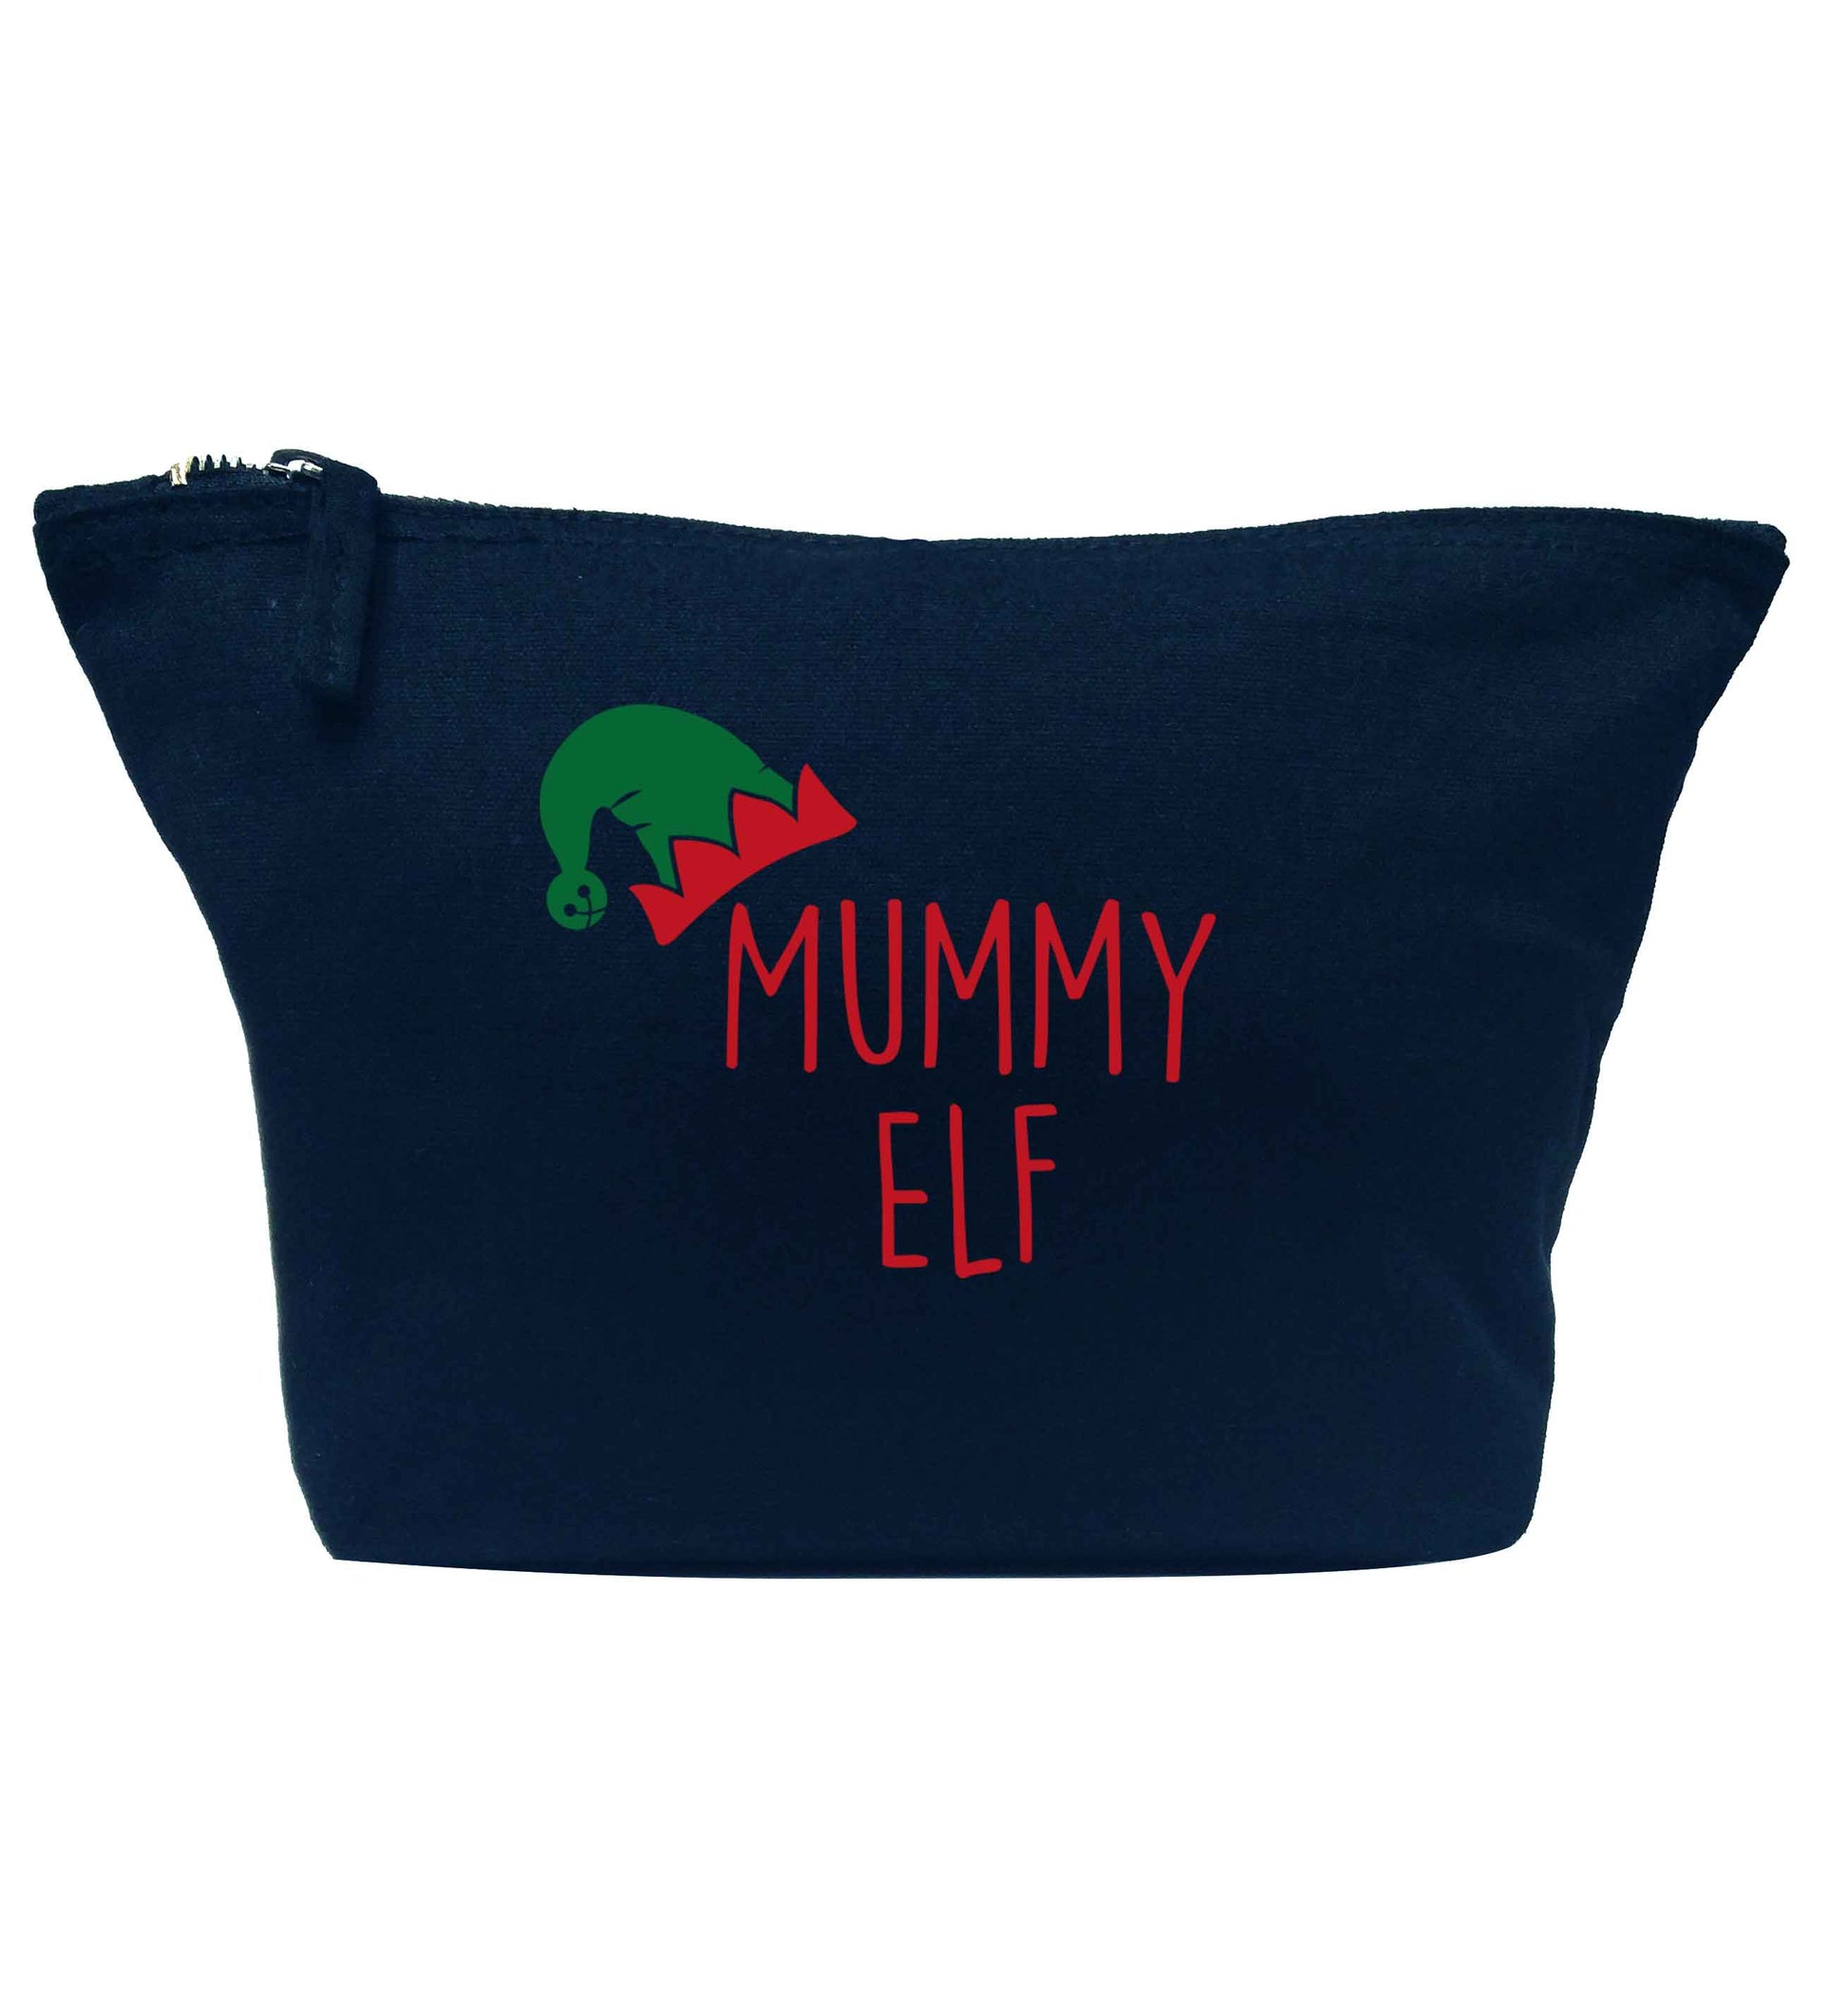 Mummy elf navy makeup bag